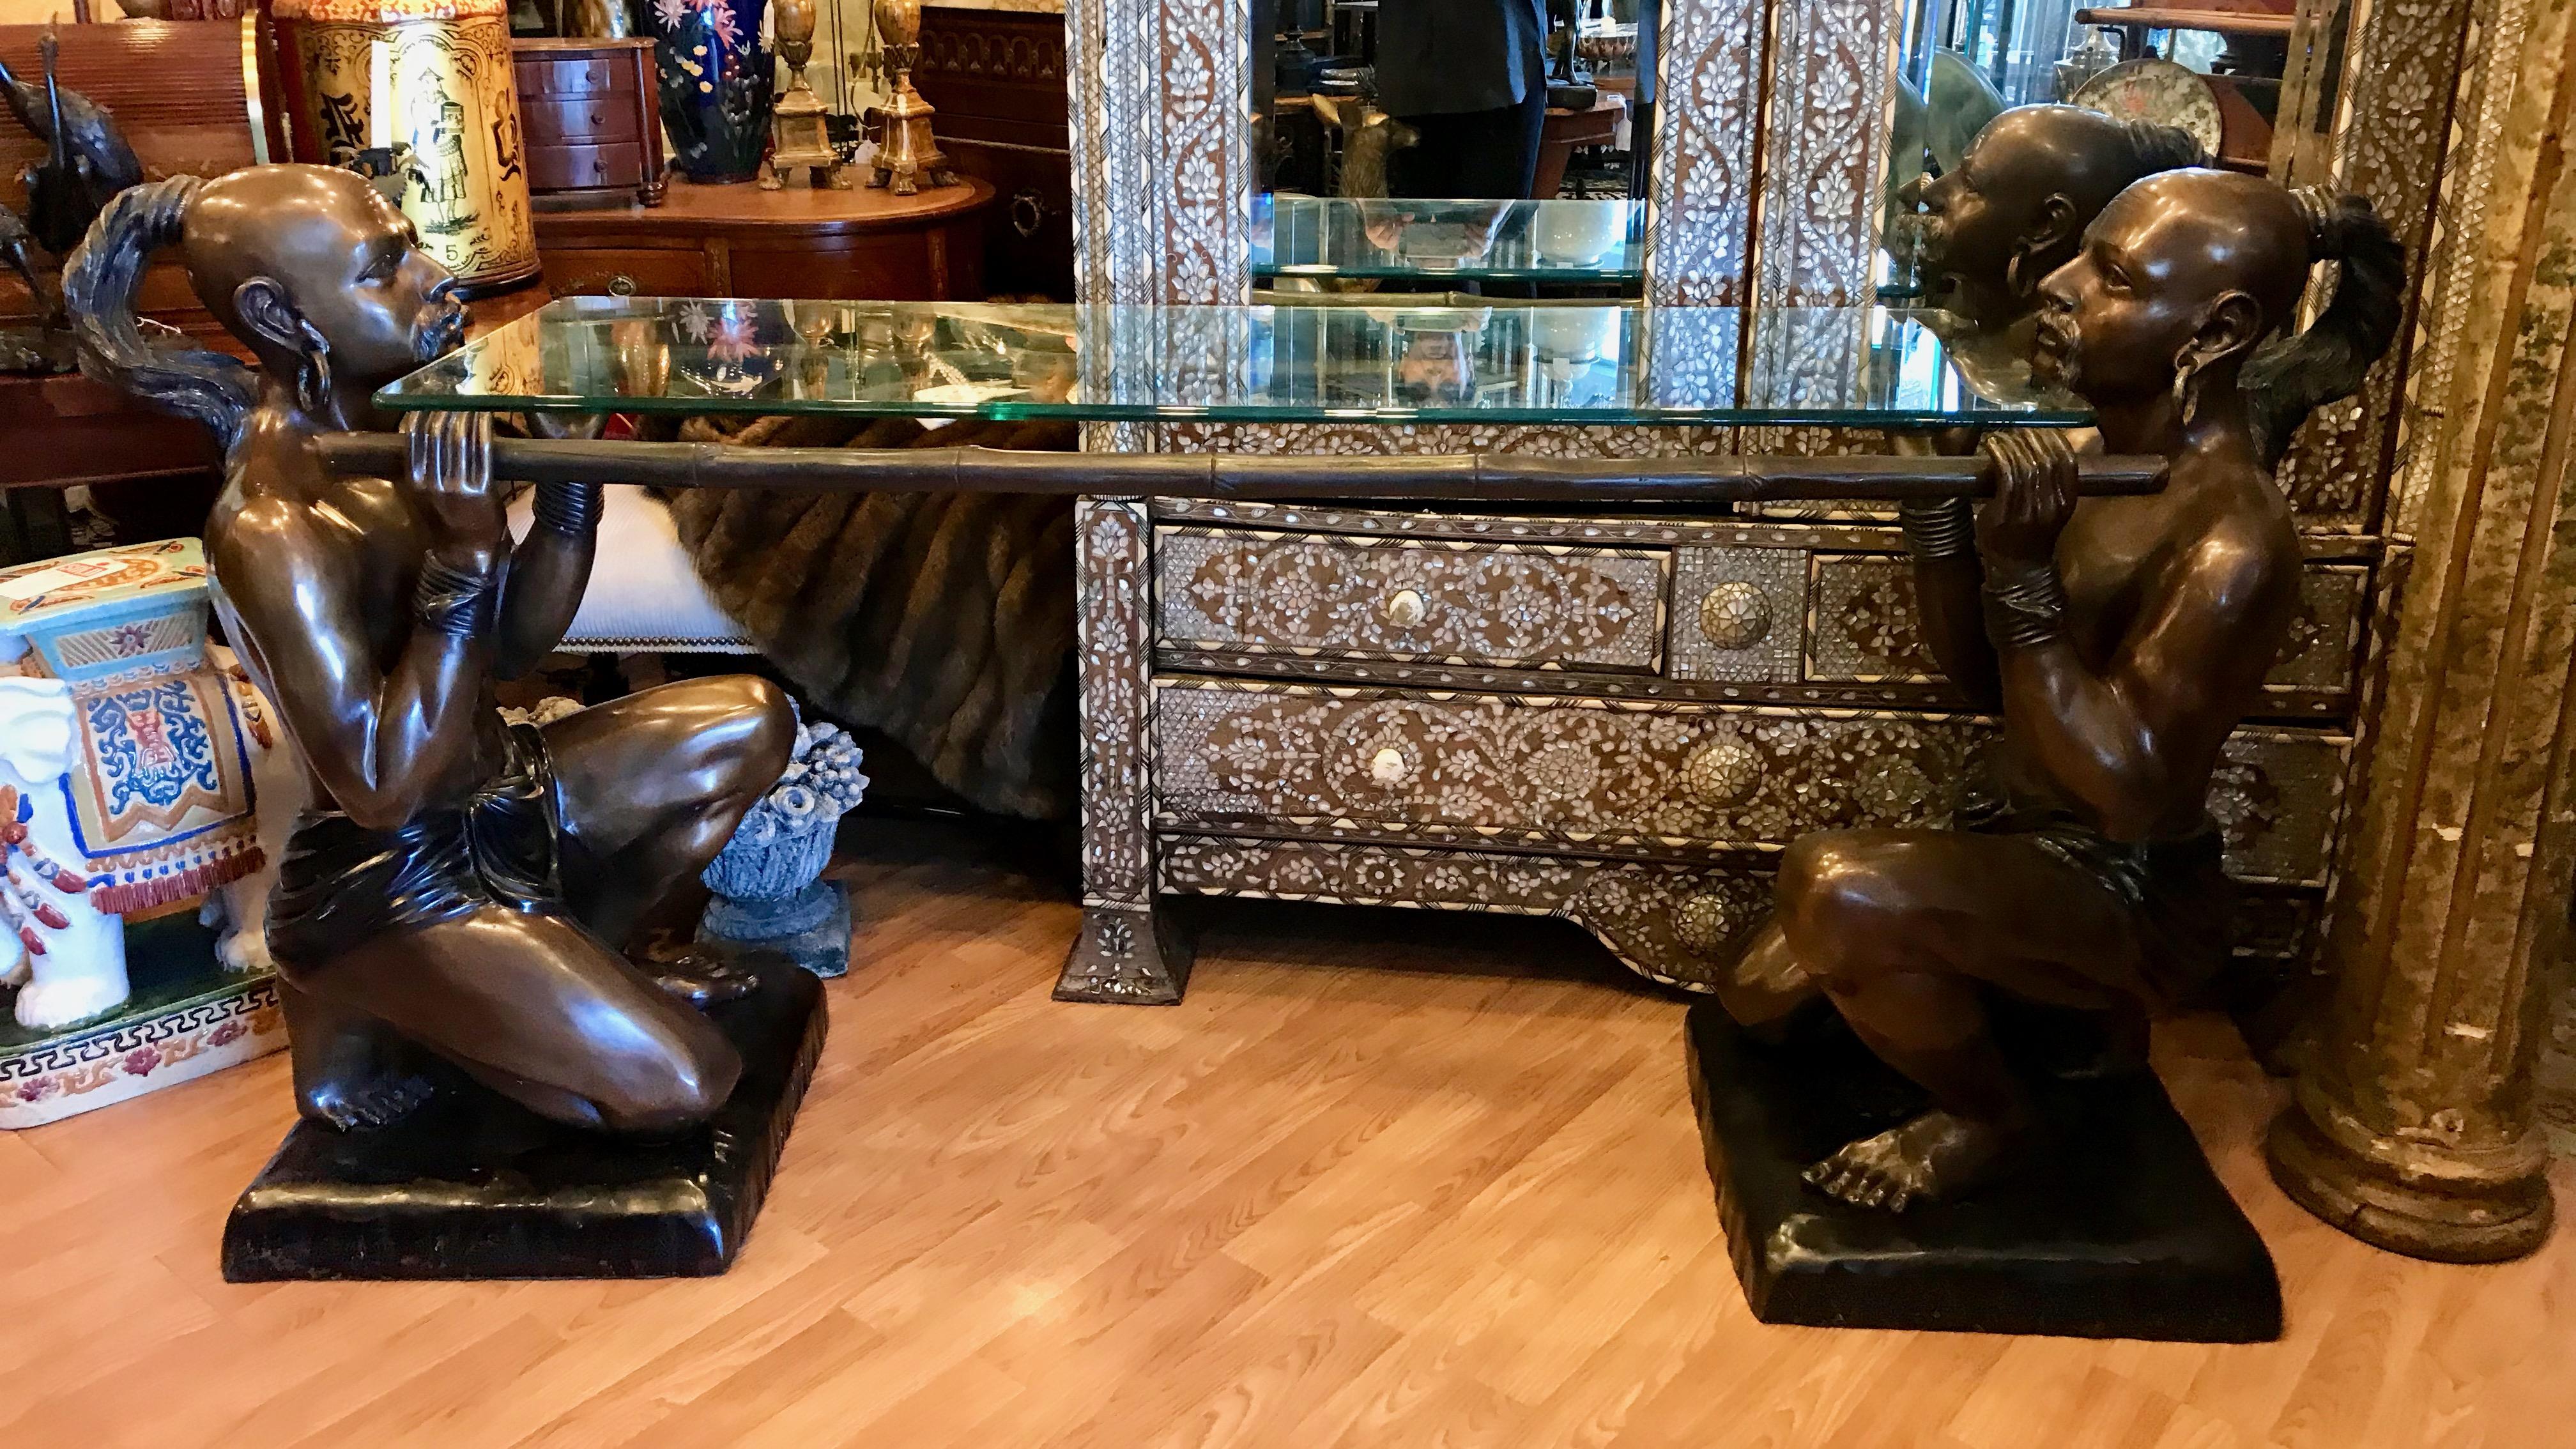 Impressionnante et grandiose - une table très originale qui attire l'attention.
Les figurines ont une belle patine de bronze et sont très réalistes.
signé/ d'après A.I.C. C-One
L'étagère a une hauteur de 32